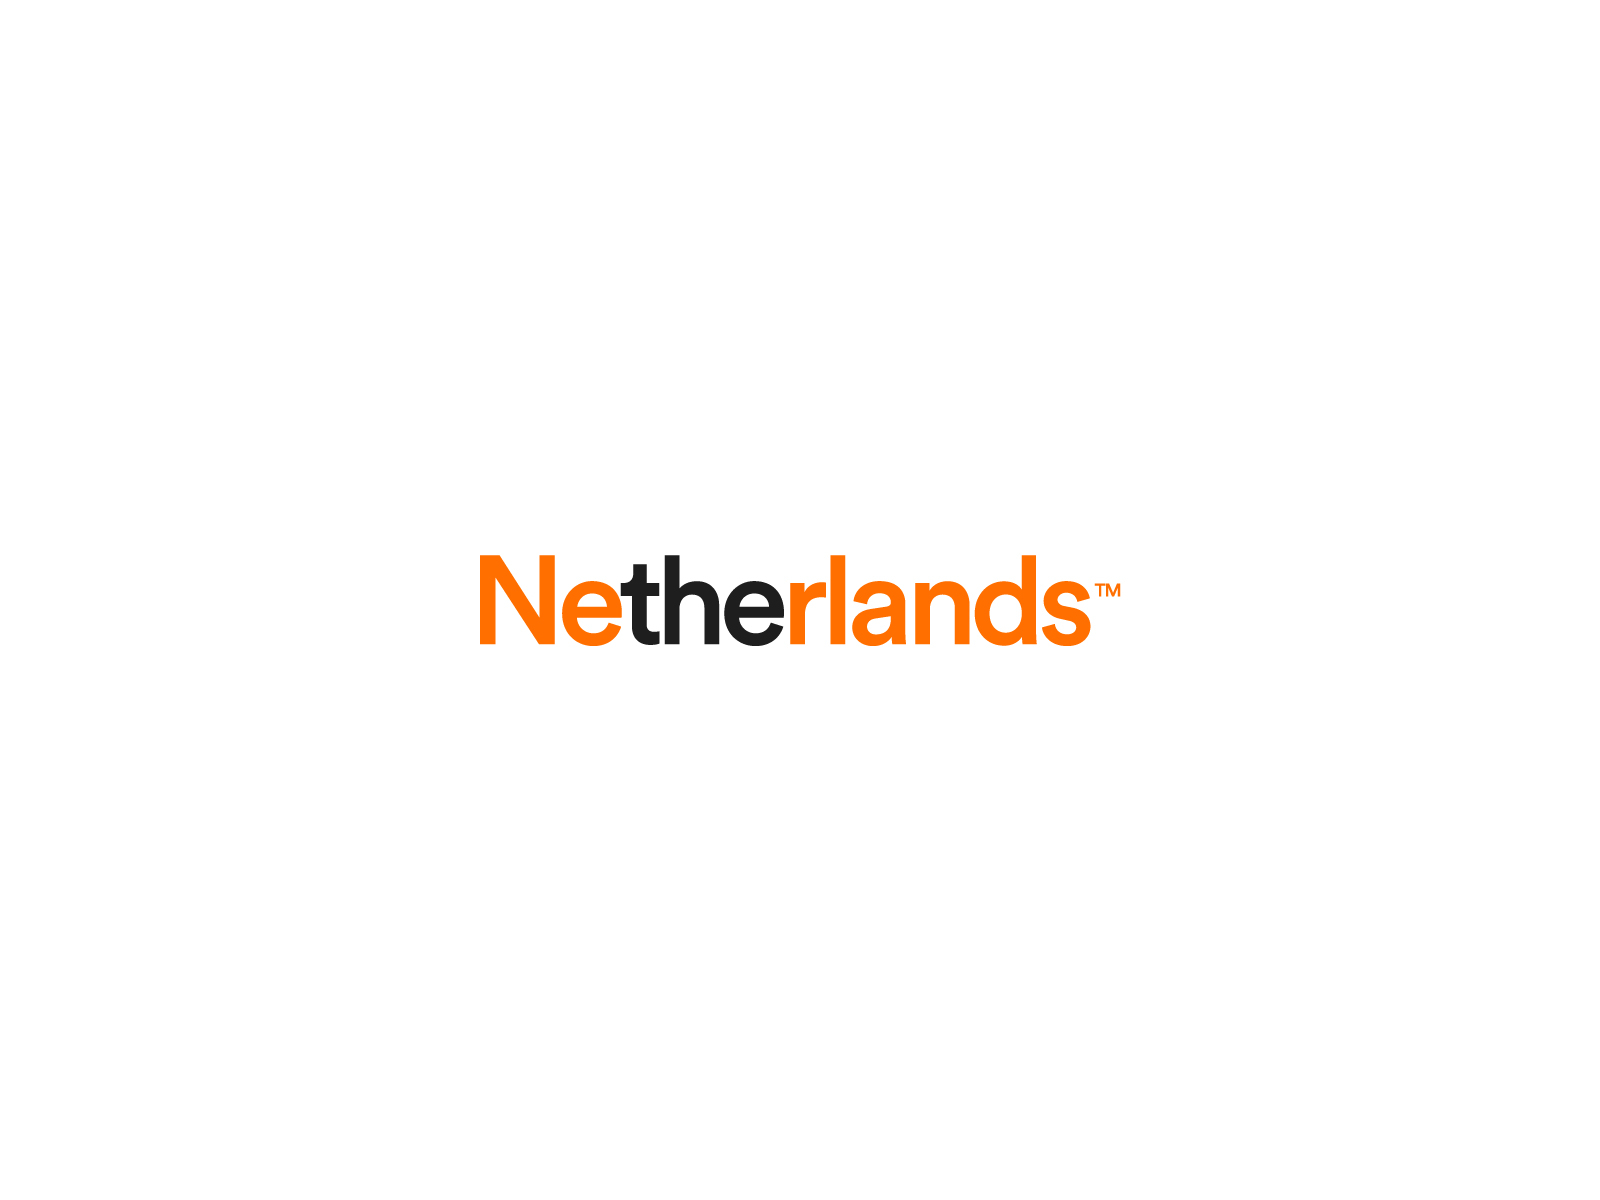 The Netherlands - Logo Redesign 🇳🇱🧡 by Jeroen van Eerden on Dribbble